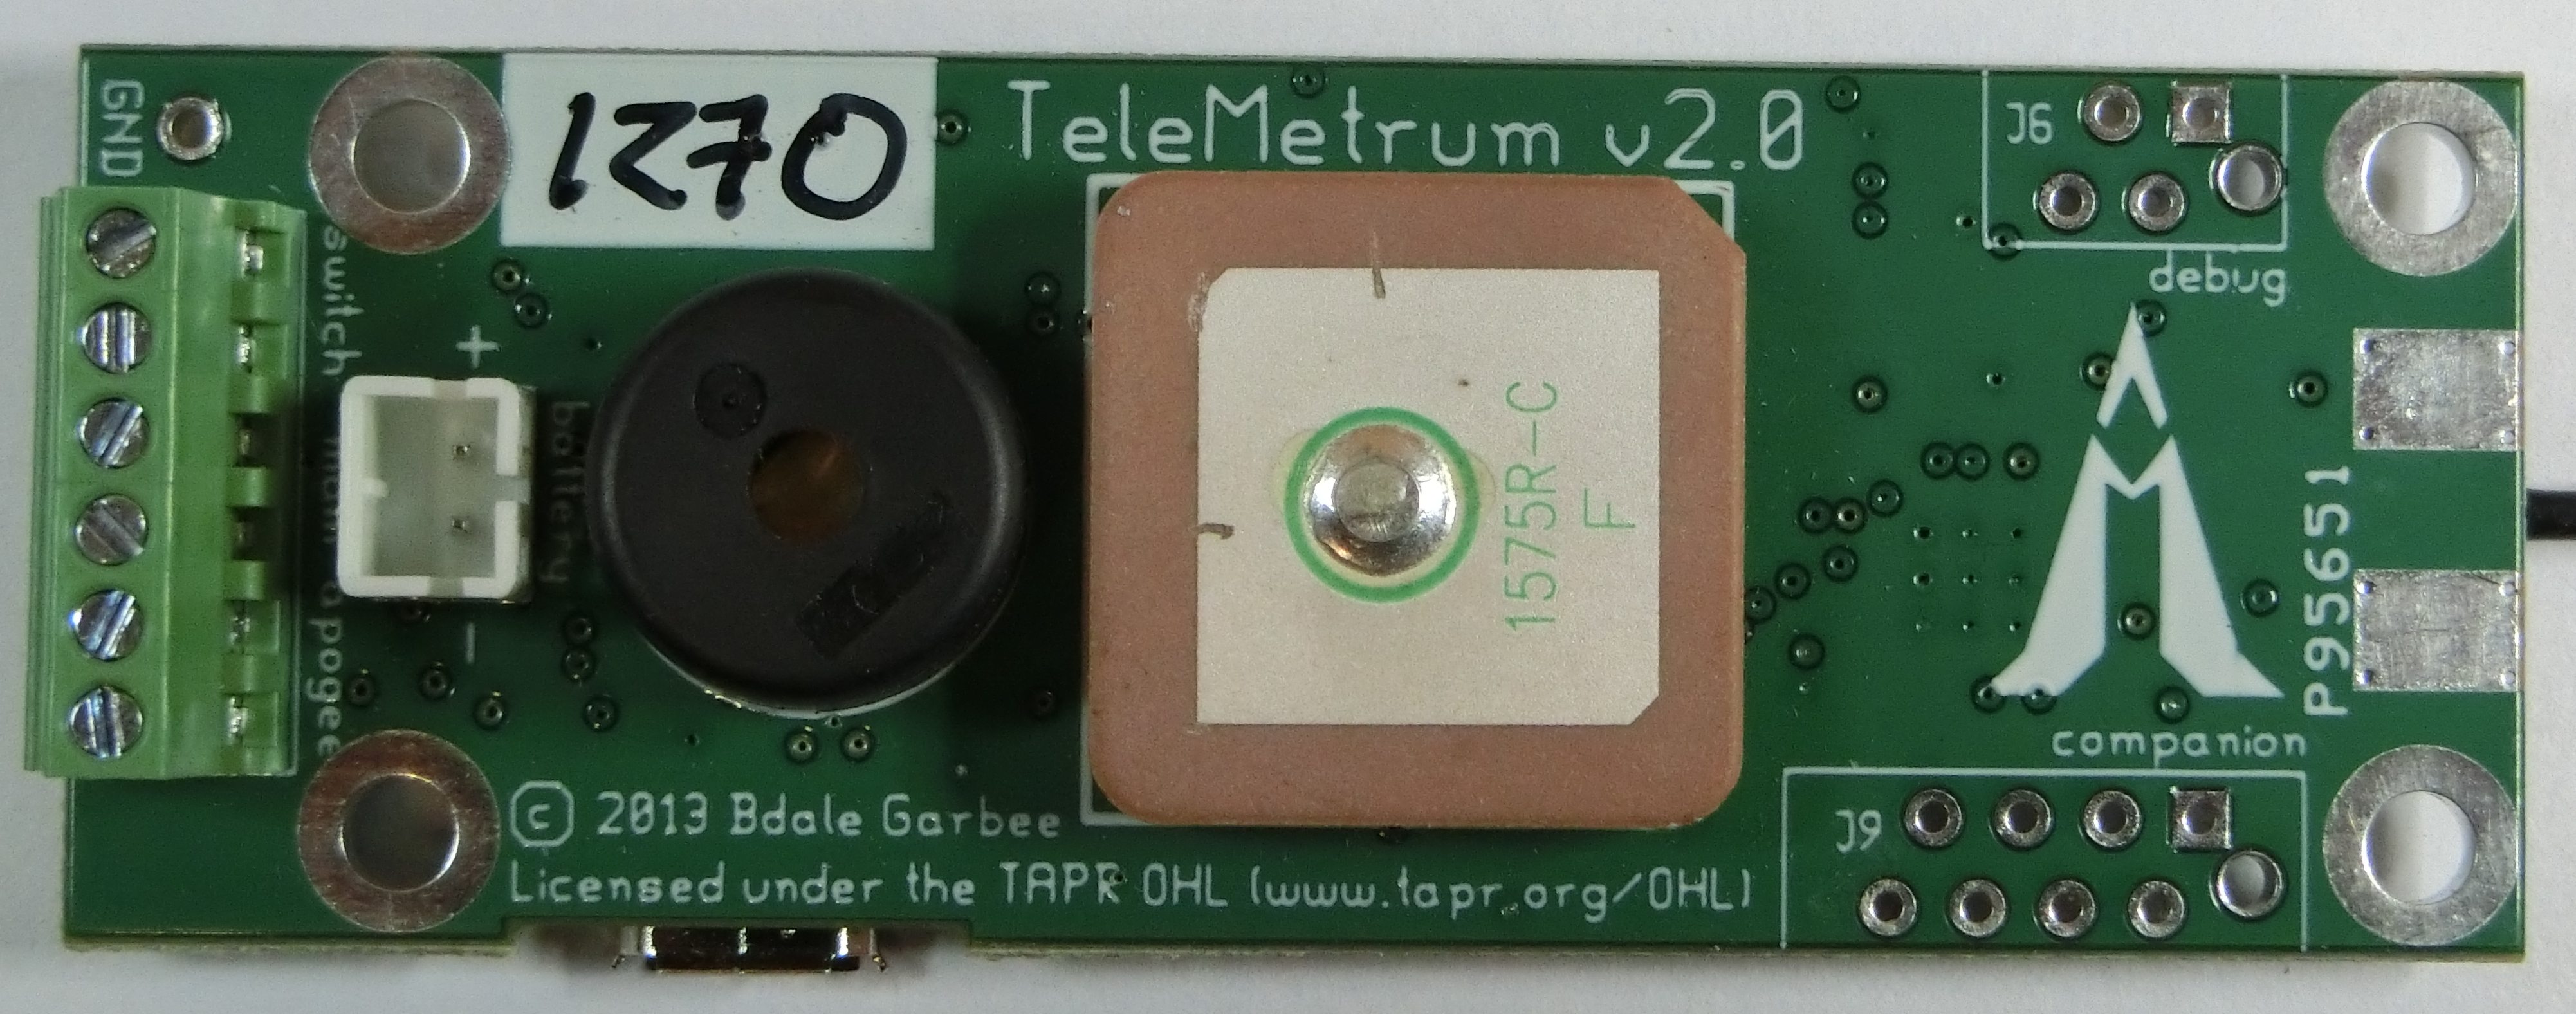 telemetrum-v2.0-th.jpg